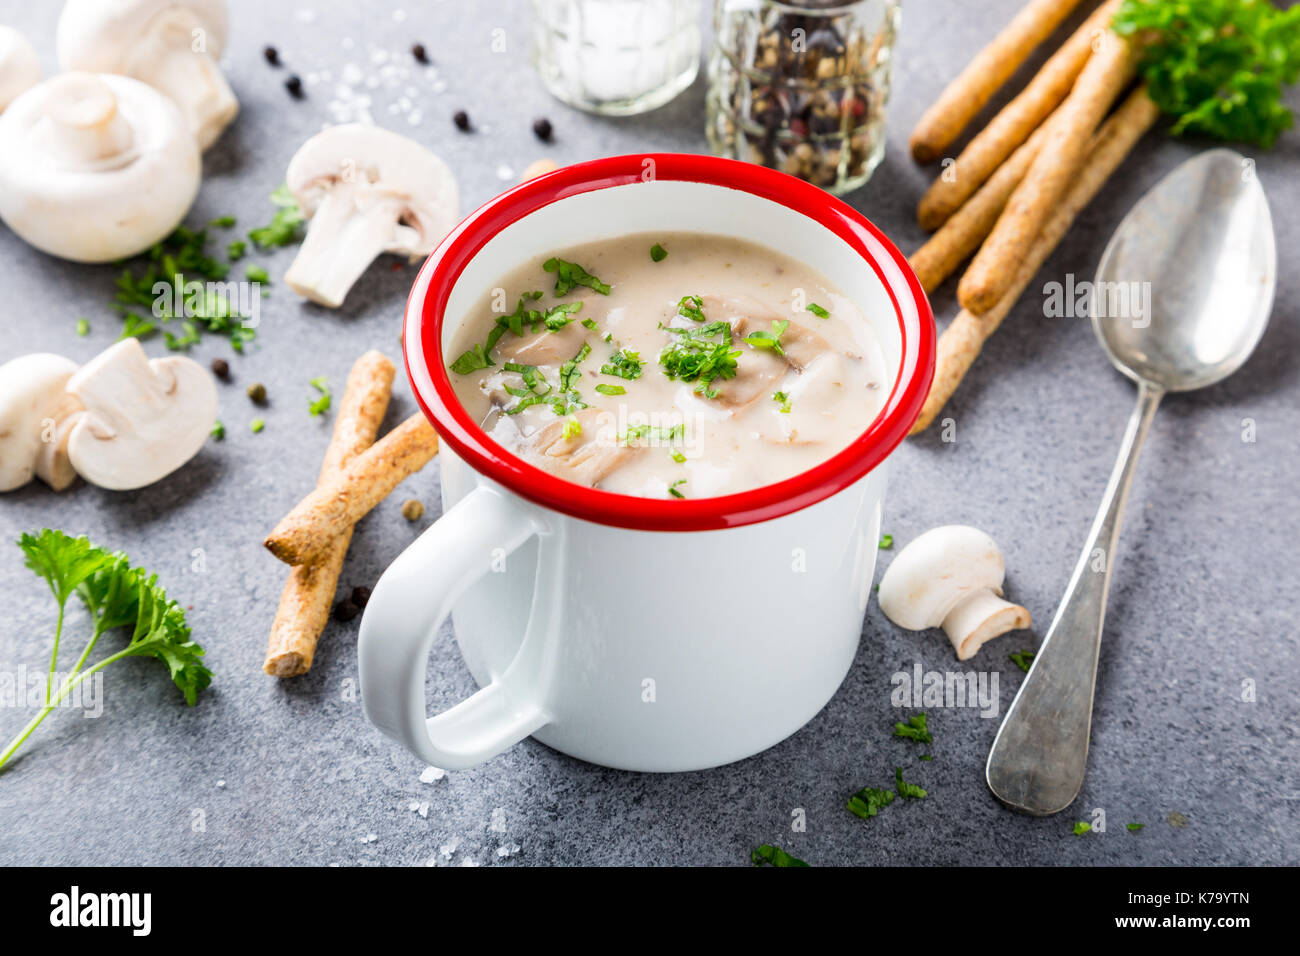 Weiß Emaille Tasse mit köstlichen hausgemachten Pilzen champignons Suppe mit Petersilie. Gesunde Ernährung Konzept. Stockfoto